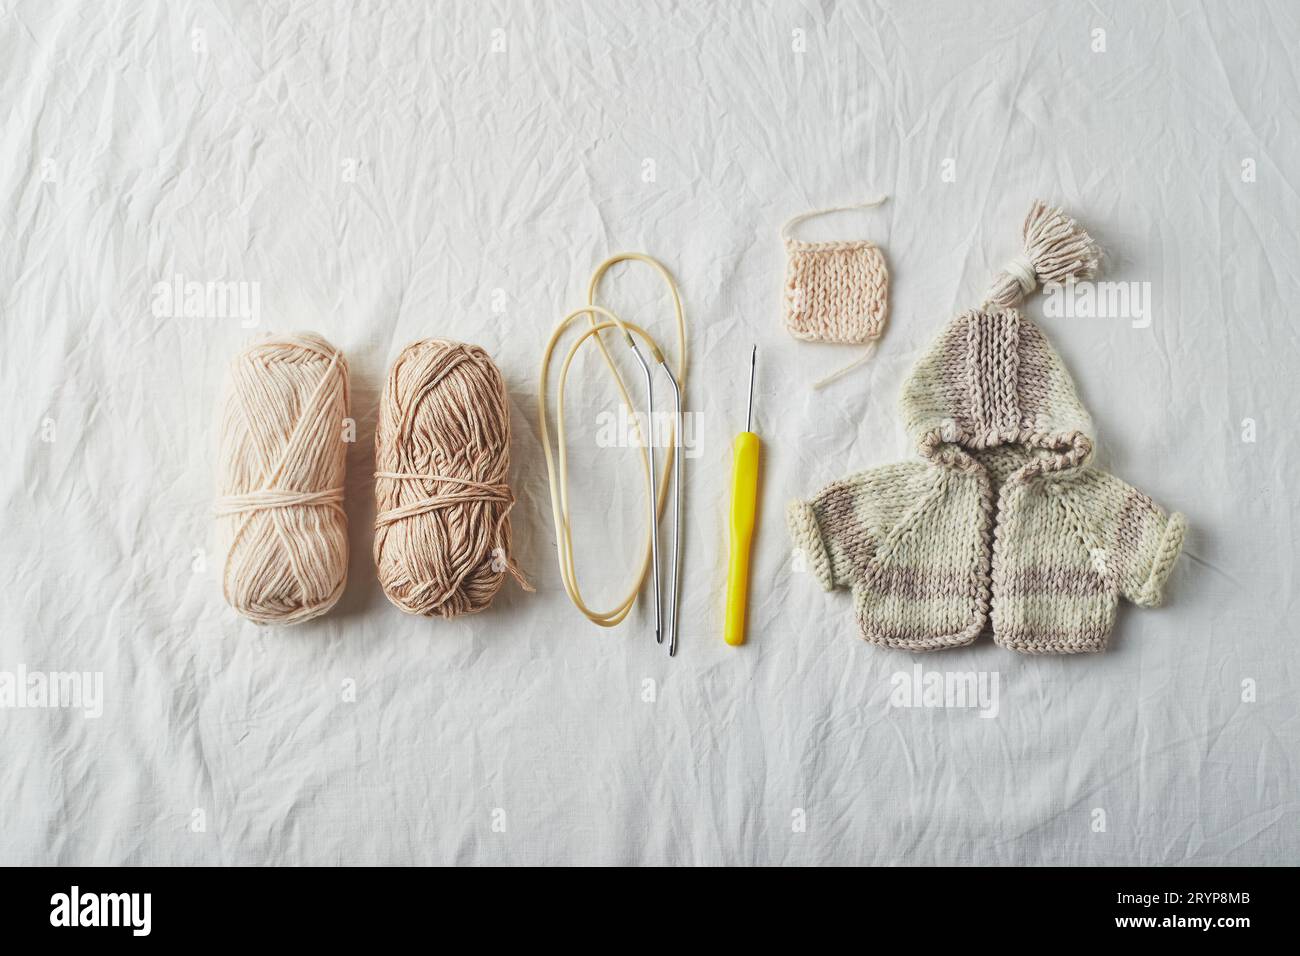 Maglioni e fili piccoli lavorati a maglia a mano su sfondo chiaro. Foto Stock